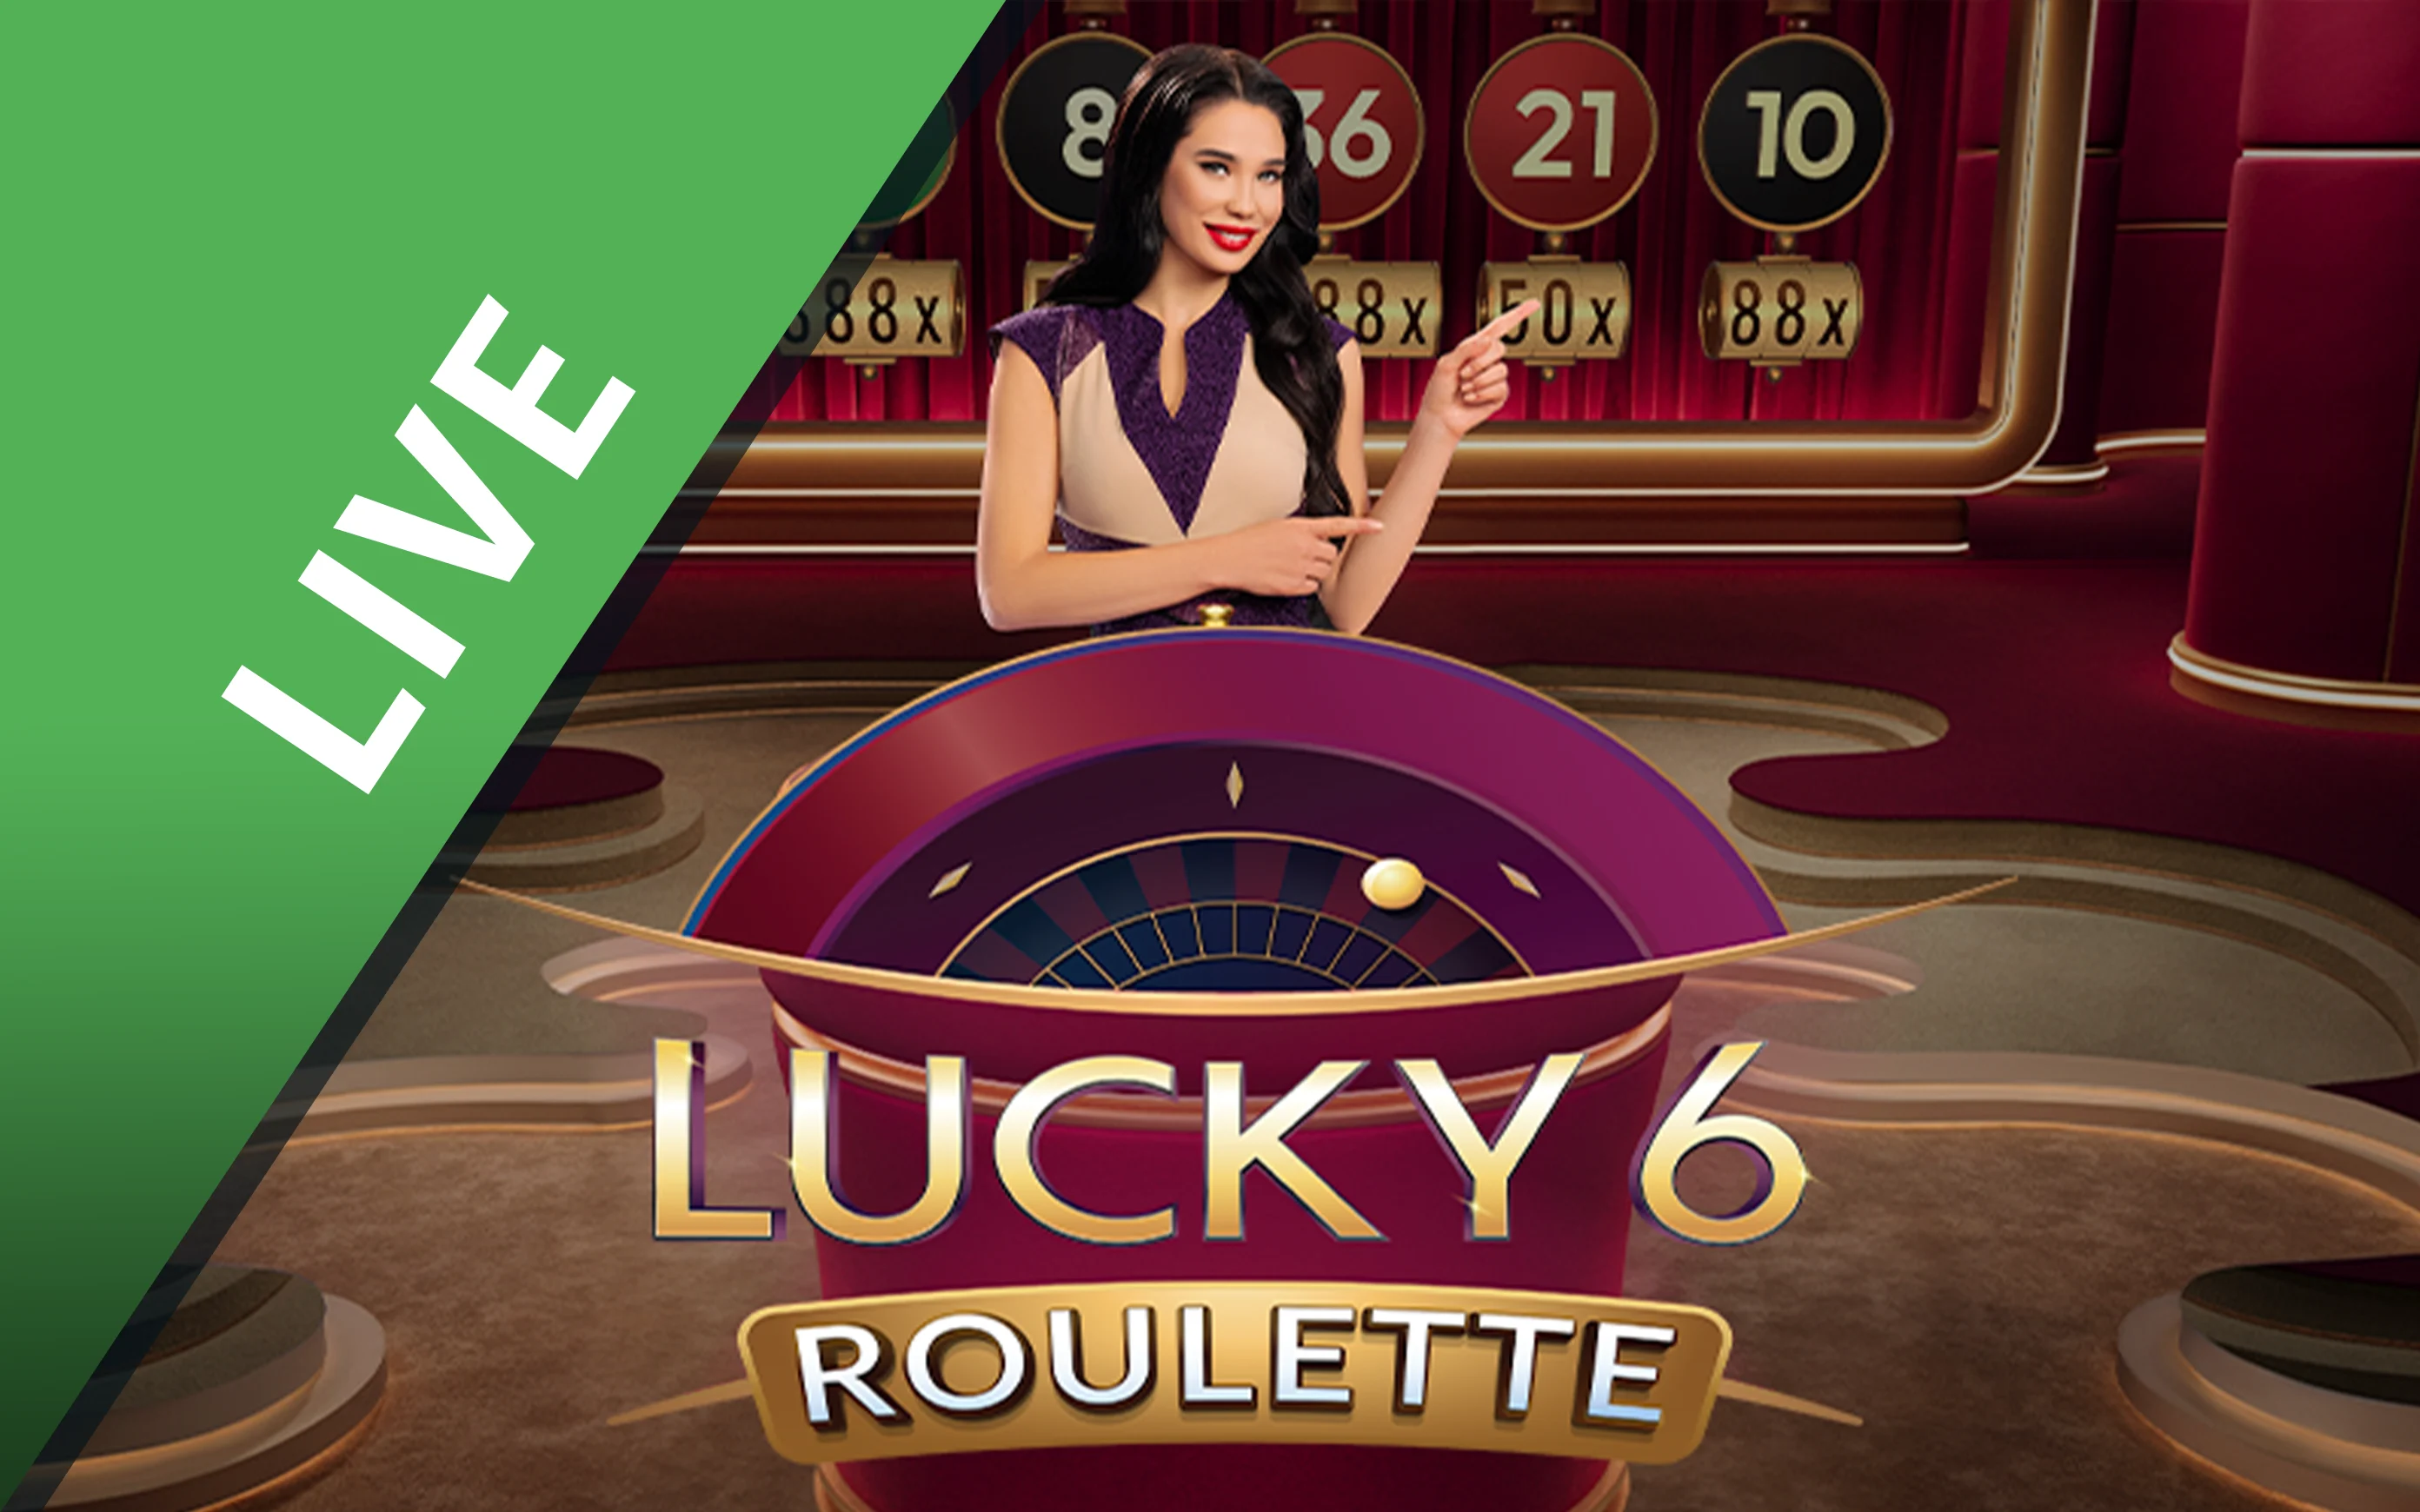 Gioca a Lucky 6 Roulette™ sul casino online Starcasino.be